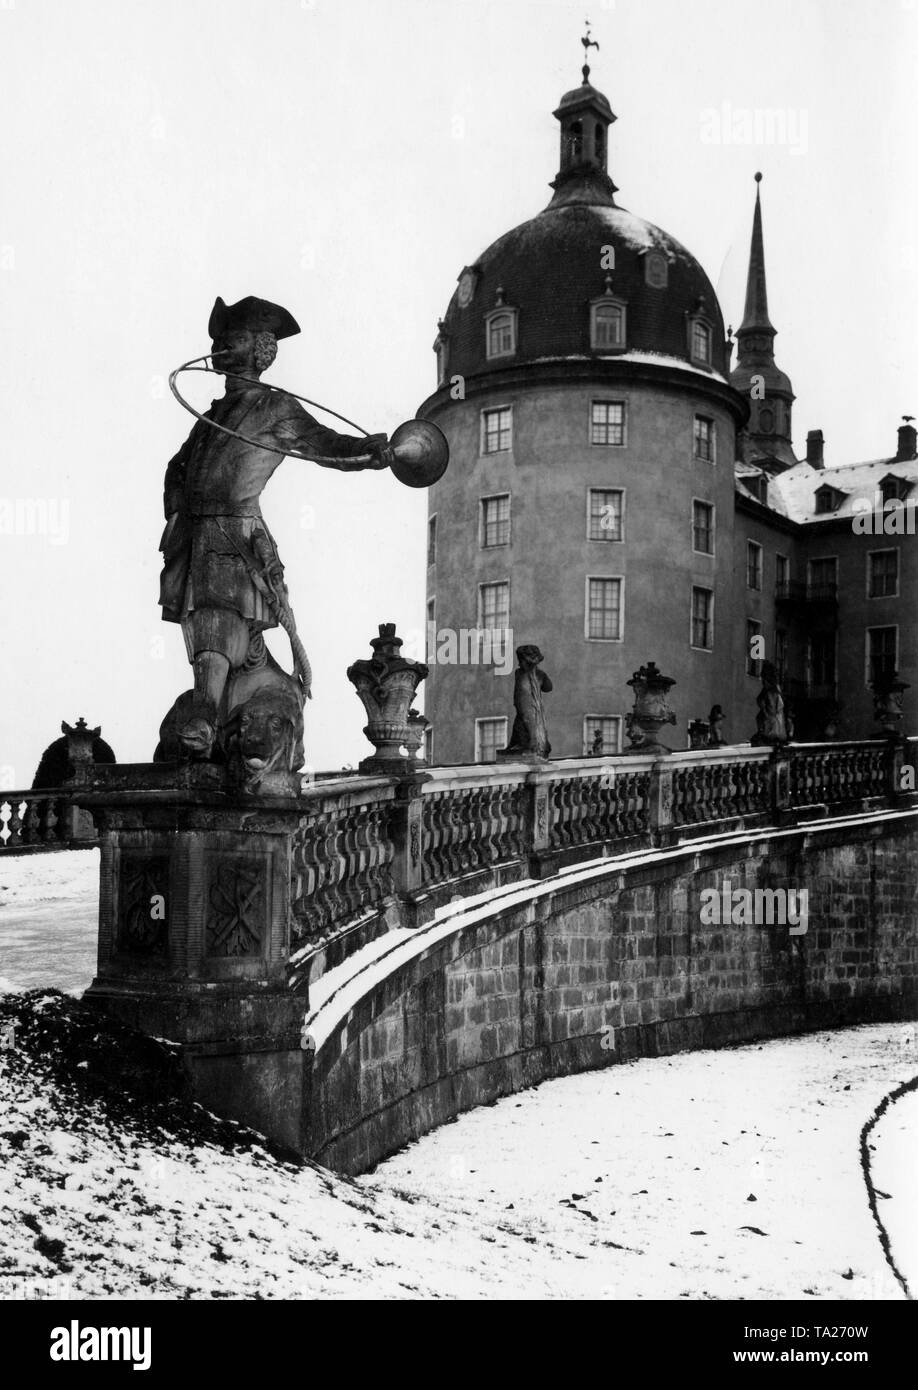 Statua di un huntsman con parforce corno da caccia da Wolf Ernst Brohn dall'anno 1660 nel giardino del Moritzburg castello di caccia di Moritzburg vicino a Dresda, Sassonia. In fondo è una torre del complesso. Re Agosto il Forte di Sassonia ha iniziato la costruzione del complesso in stile barocco nel 1703 su un isola artificiale. Foto Stock